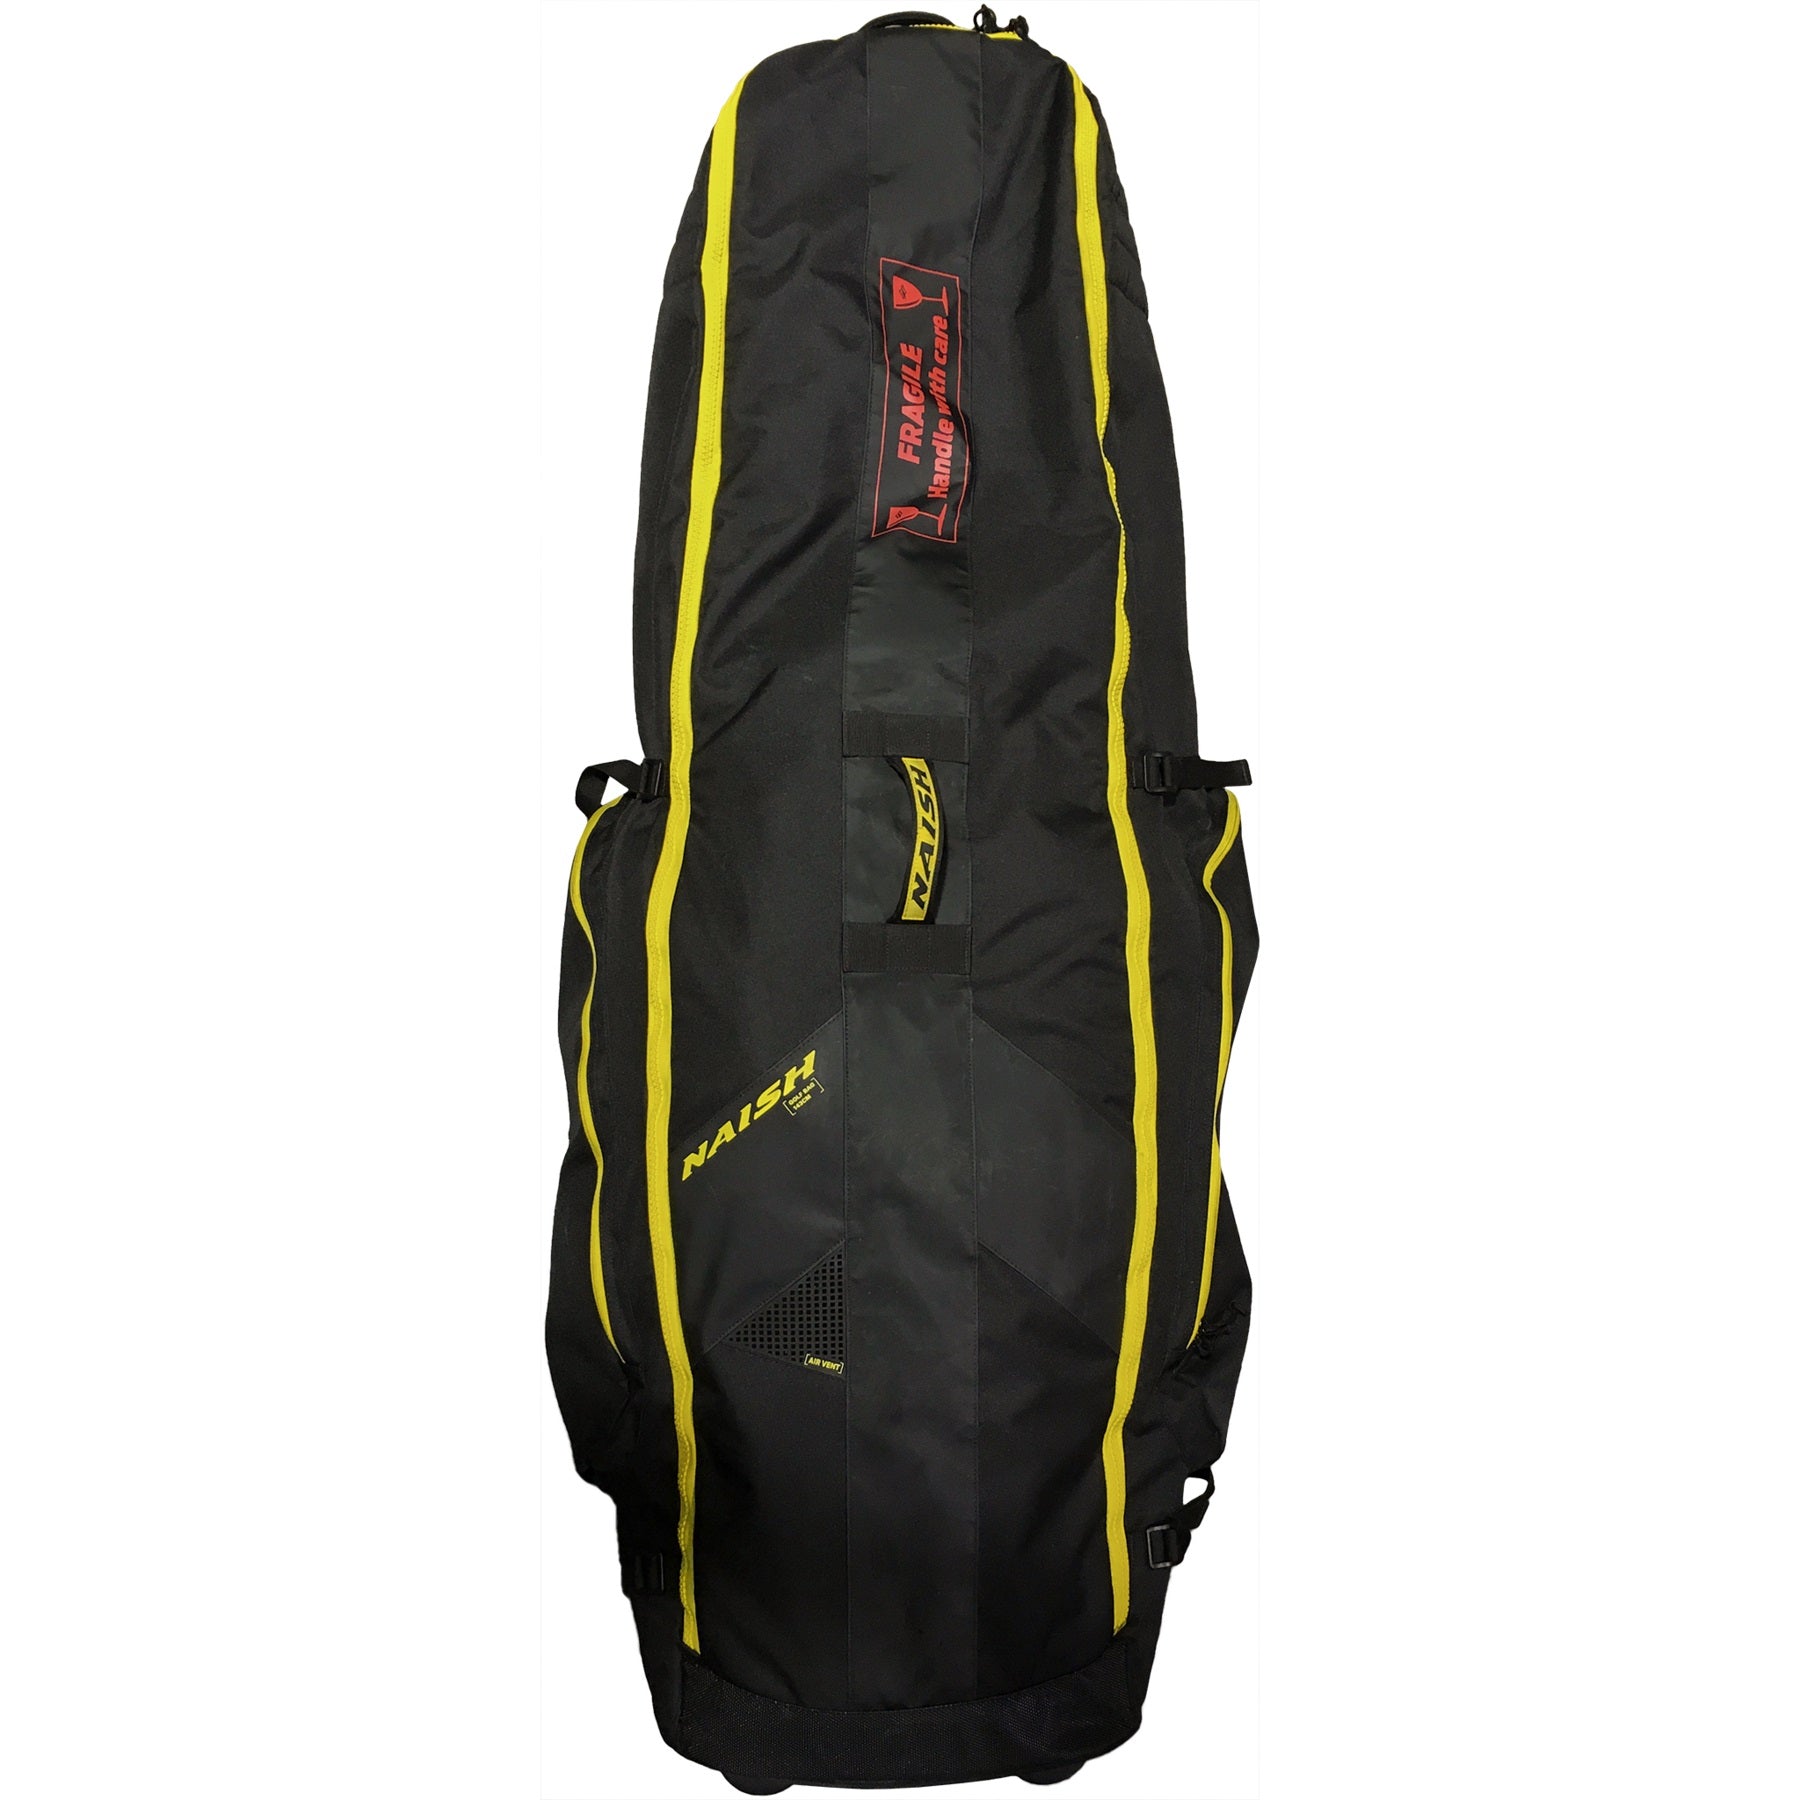 Naish Golf Wheeled travel board bag